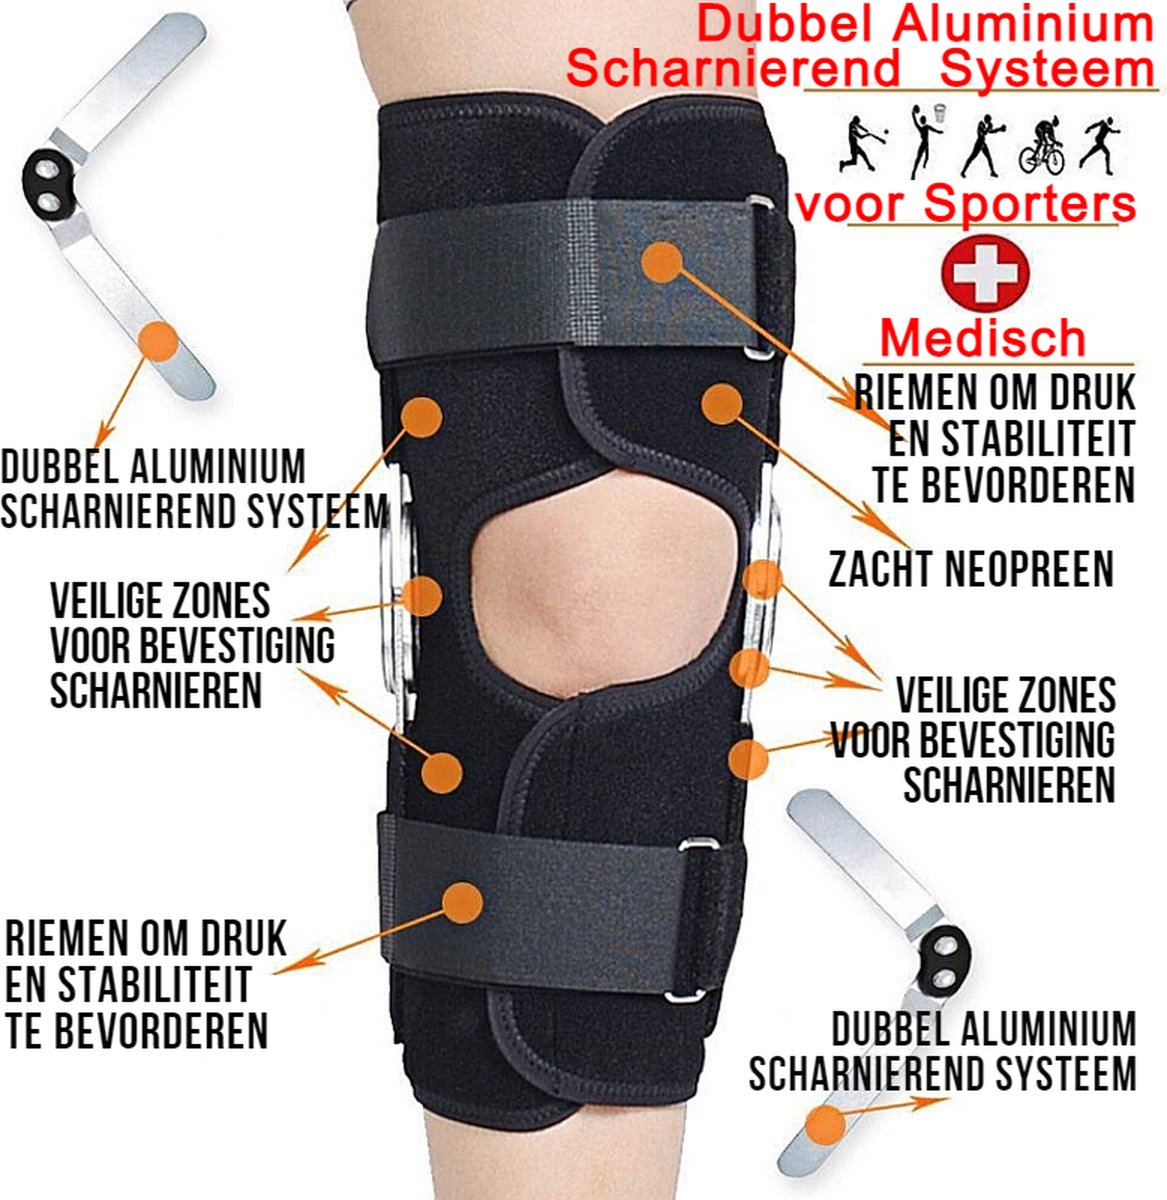 Genouillère Premium - 'ErgoKnee 3', Bracefox™ - Taille M - Medium, Bandage au genou